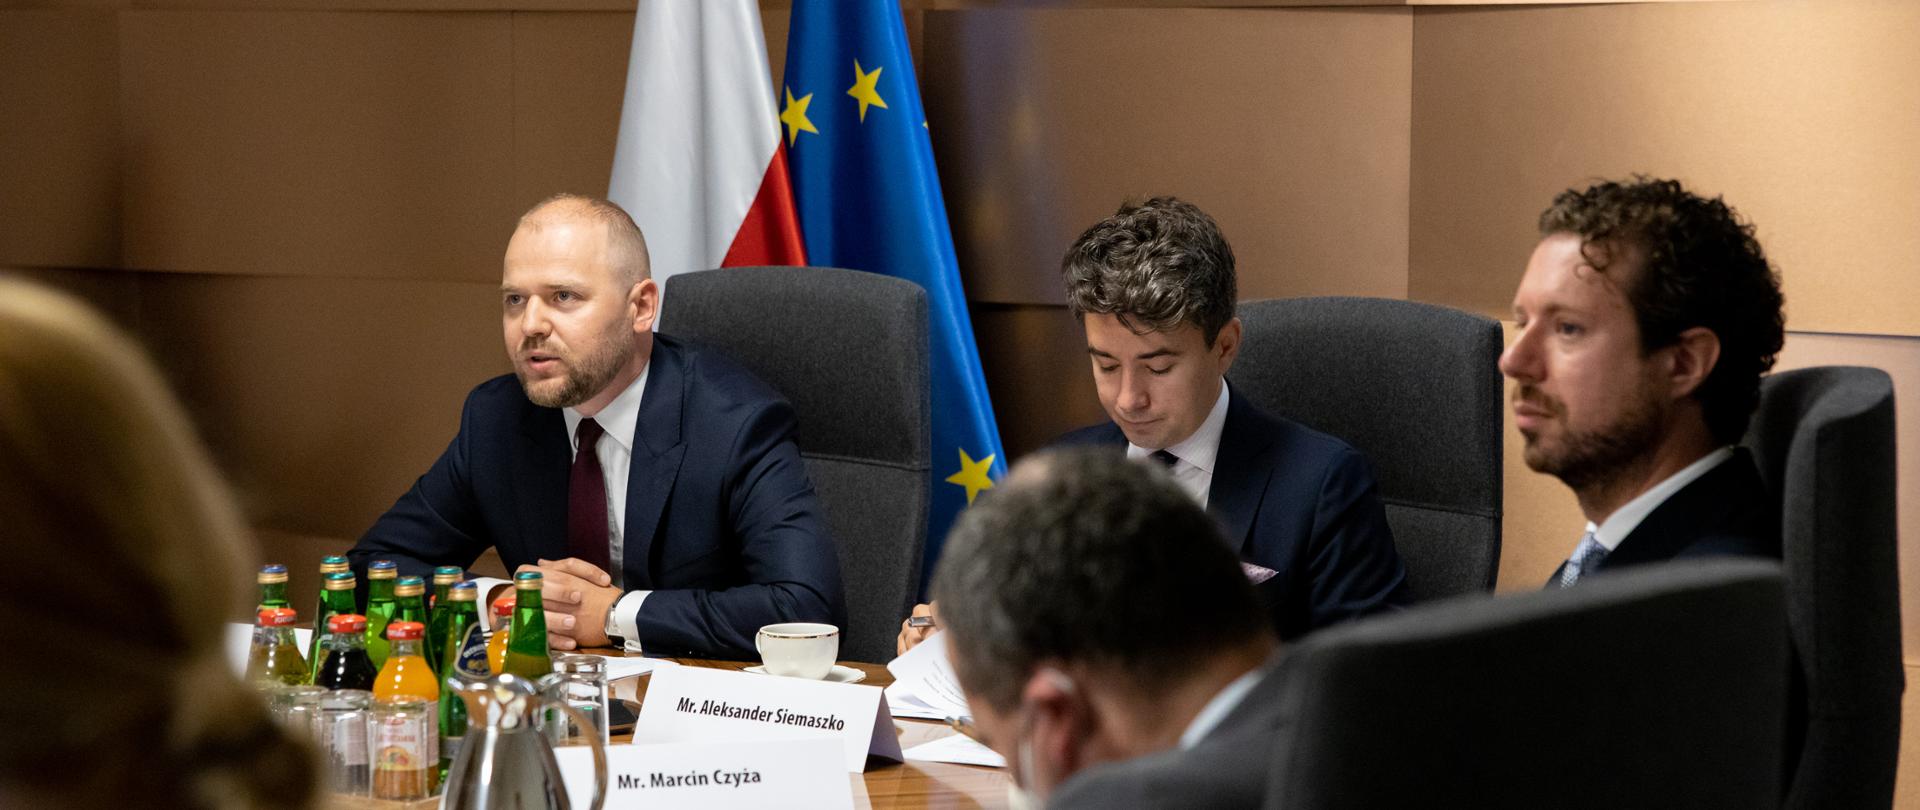 Wiceminister Krzysztof Mazur siedzi za stołem na tle flag polskiej i unijnej. Obok delegacja Polski.